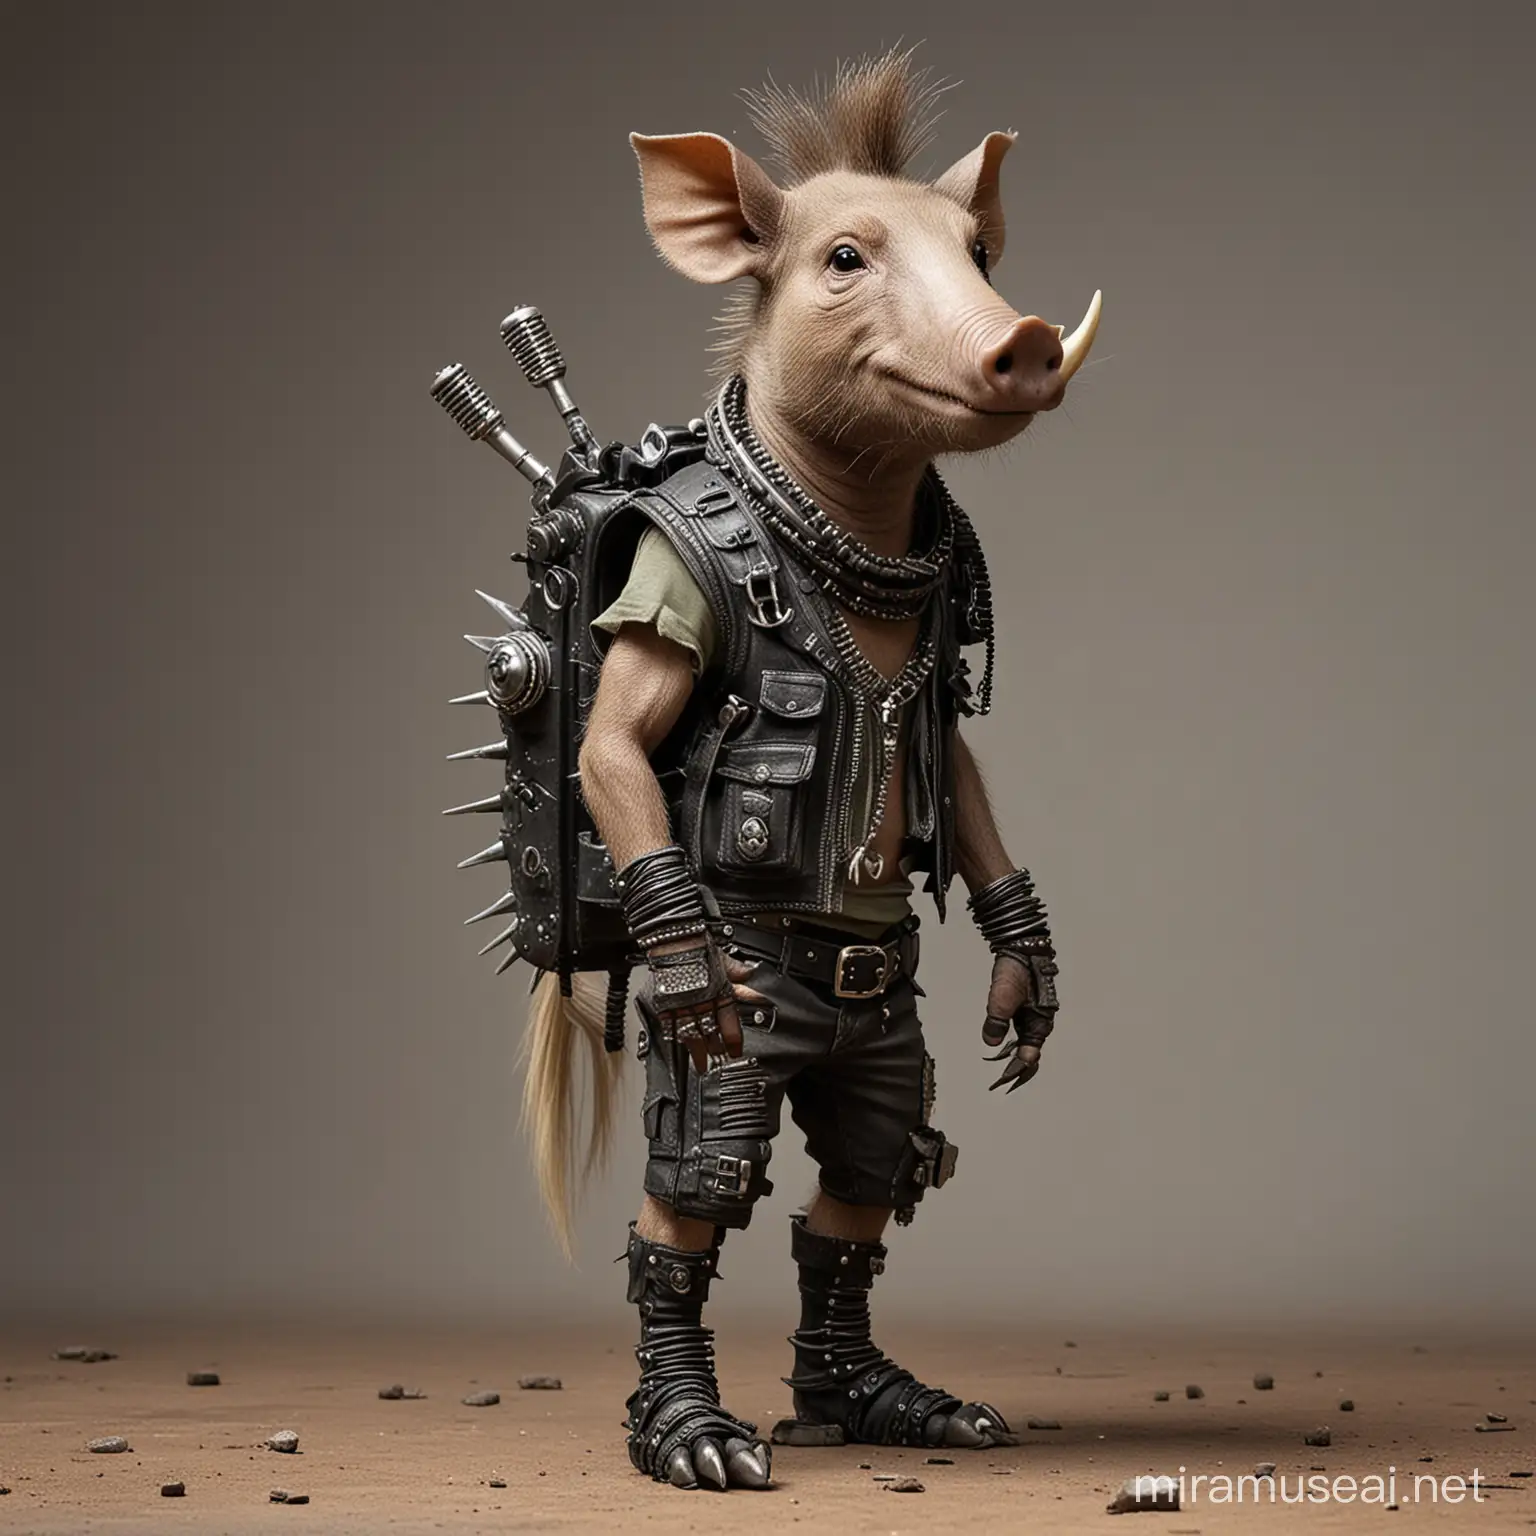 anthropomorphic warthog punk rocker standing on hind legs, post apocalypse